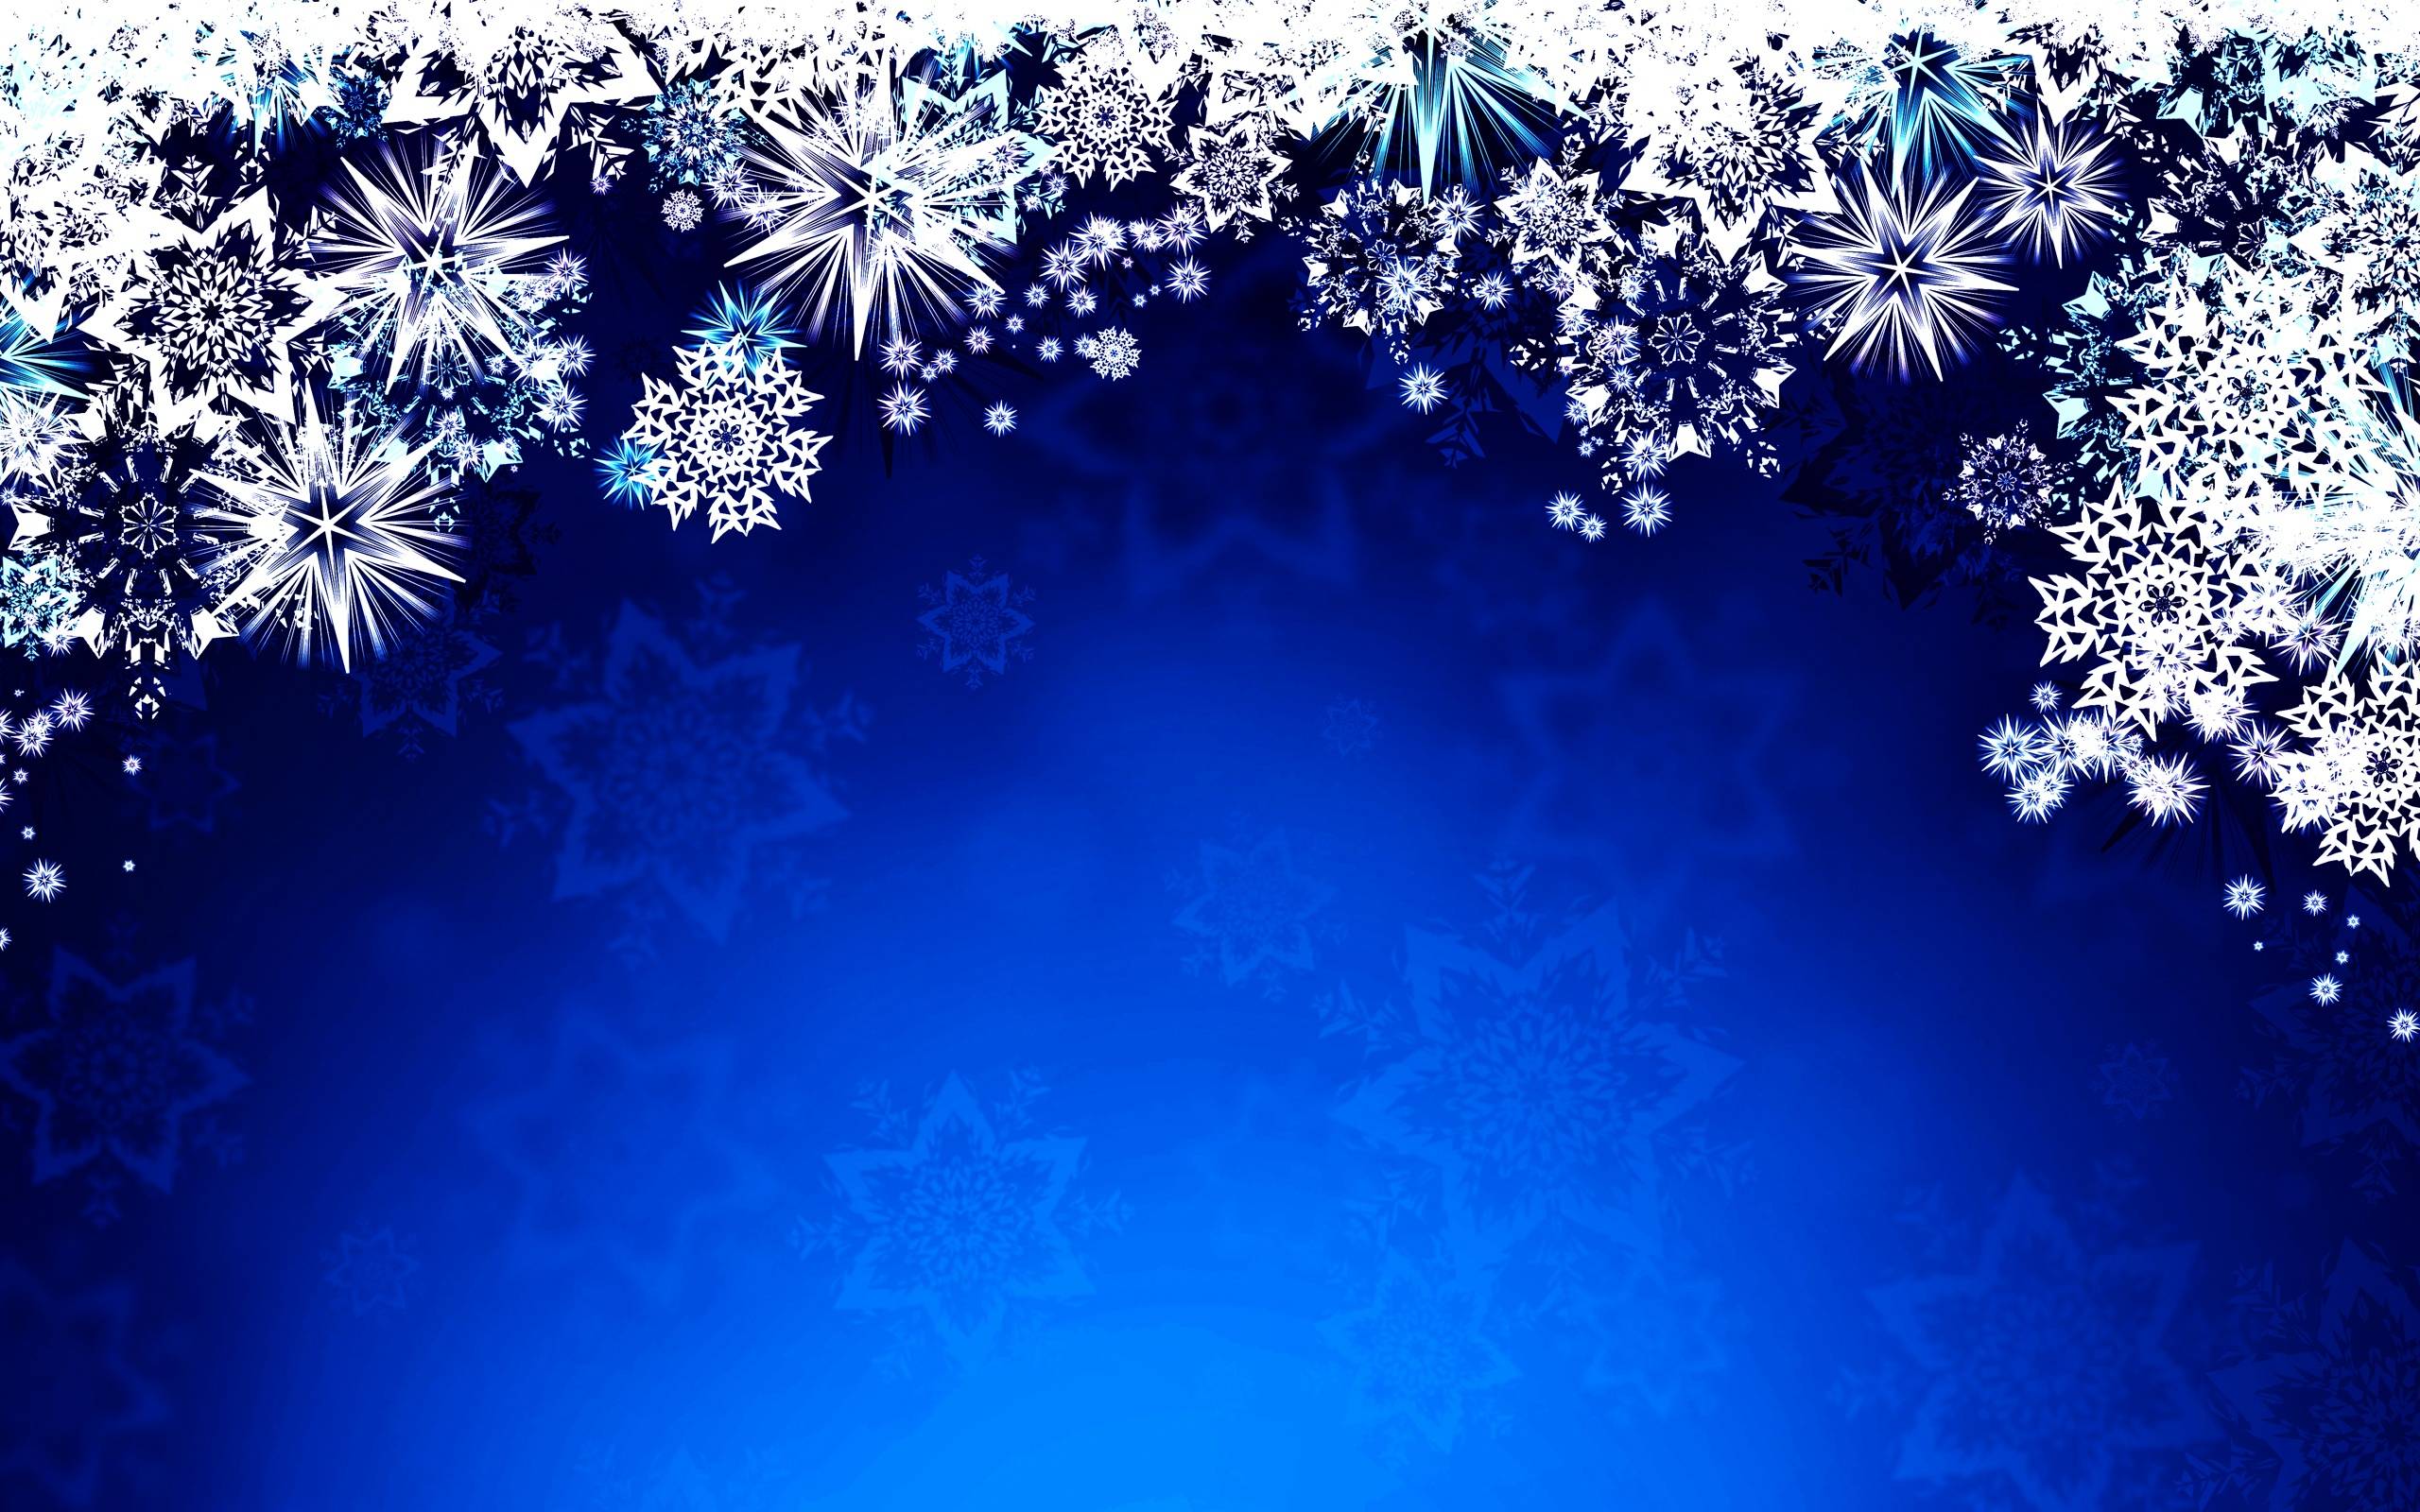 Best 49+ Snowflake Desktop Backgrounds on HipWallpapers